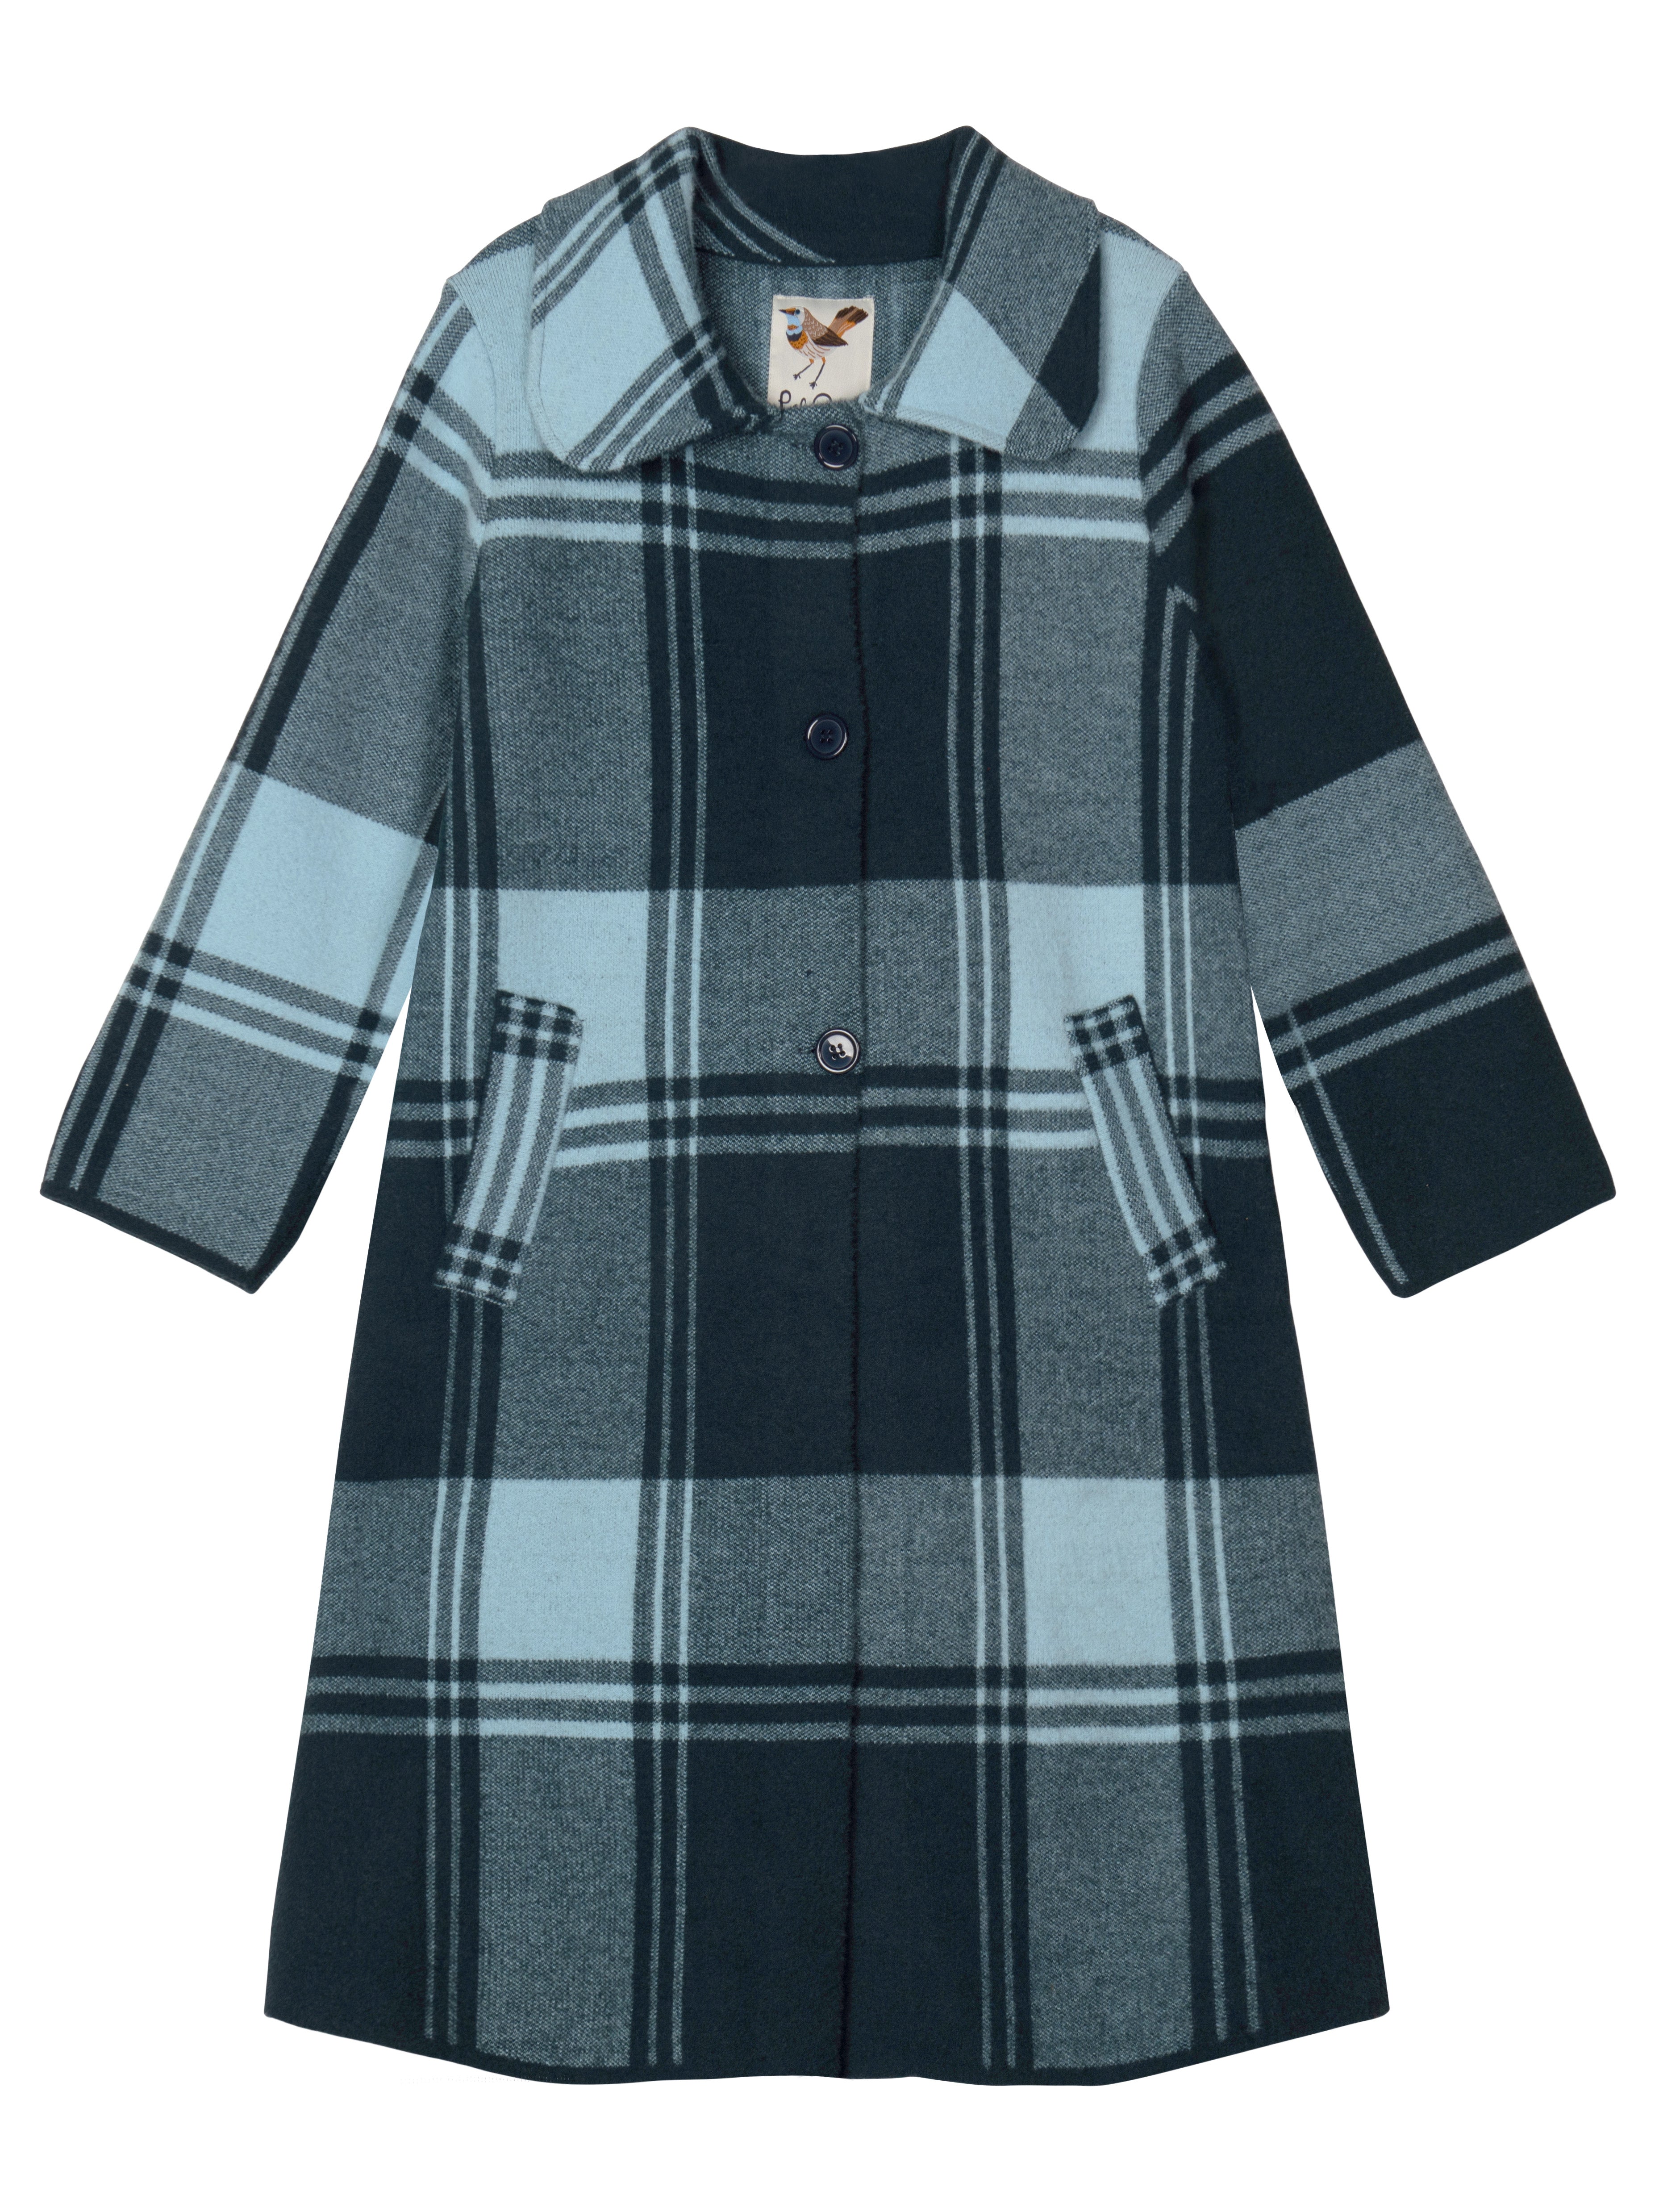 NATALIE coat Ocean Blue Plaid - Lesley Evers-coat-outerwear-Shop